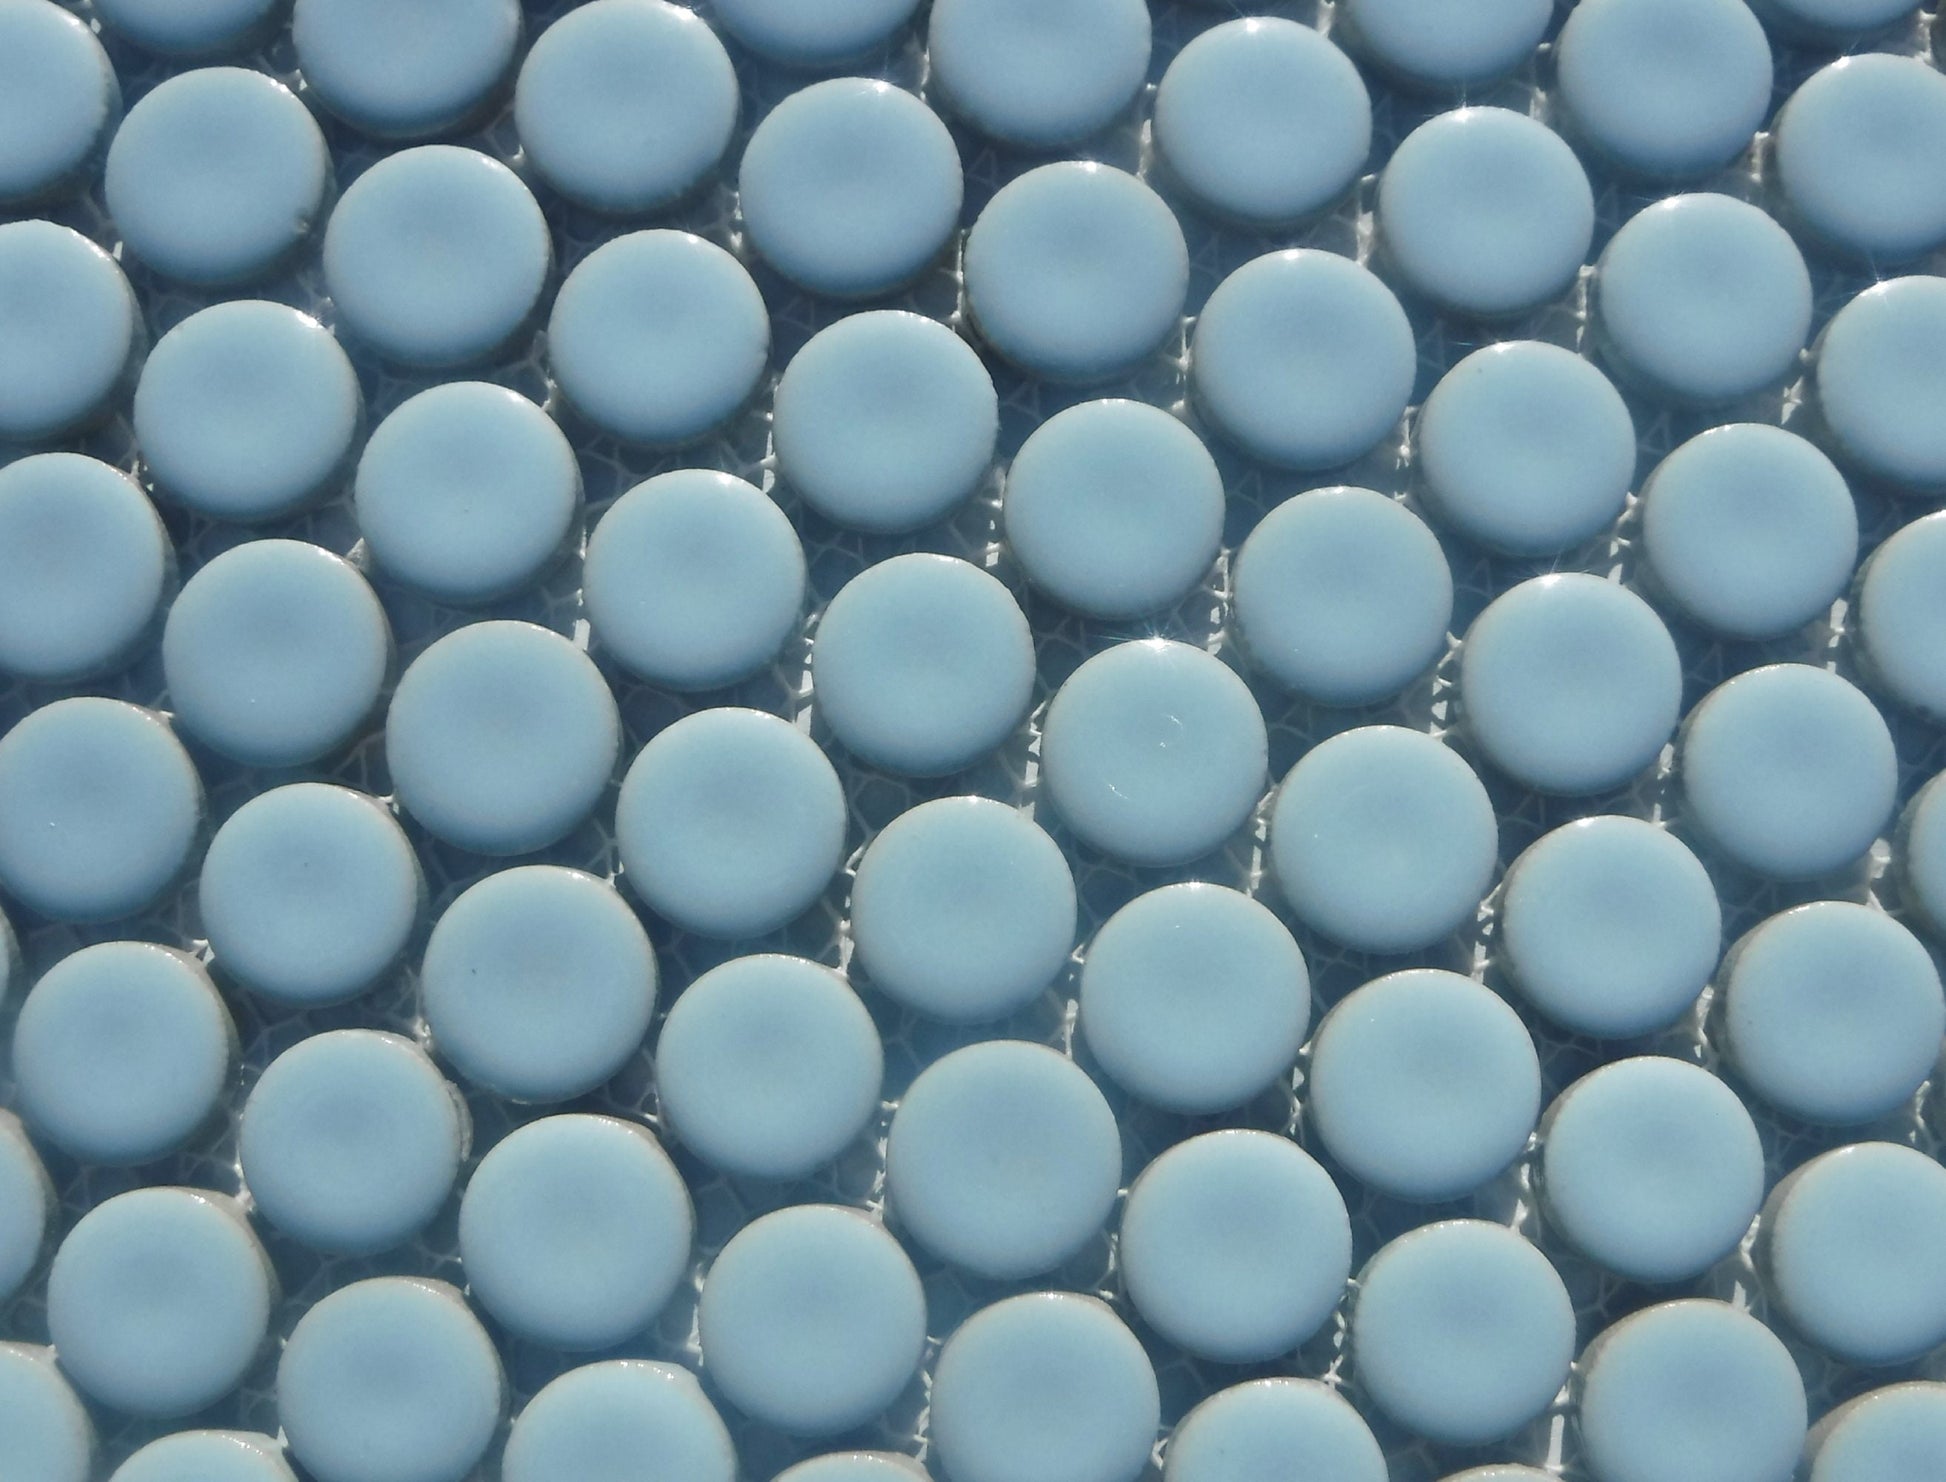 Pale Blue Ceramic Tiles - 2 cm Penny Rounds Mosaic Tiles - 25 Tiles - Porcelain Circles